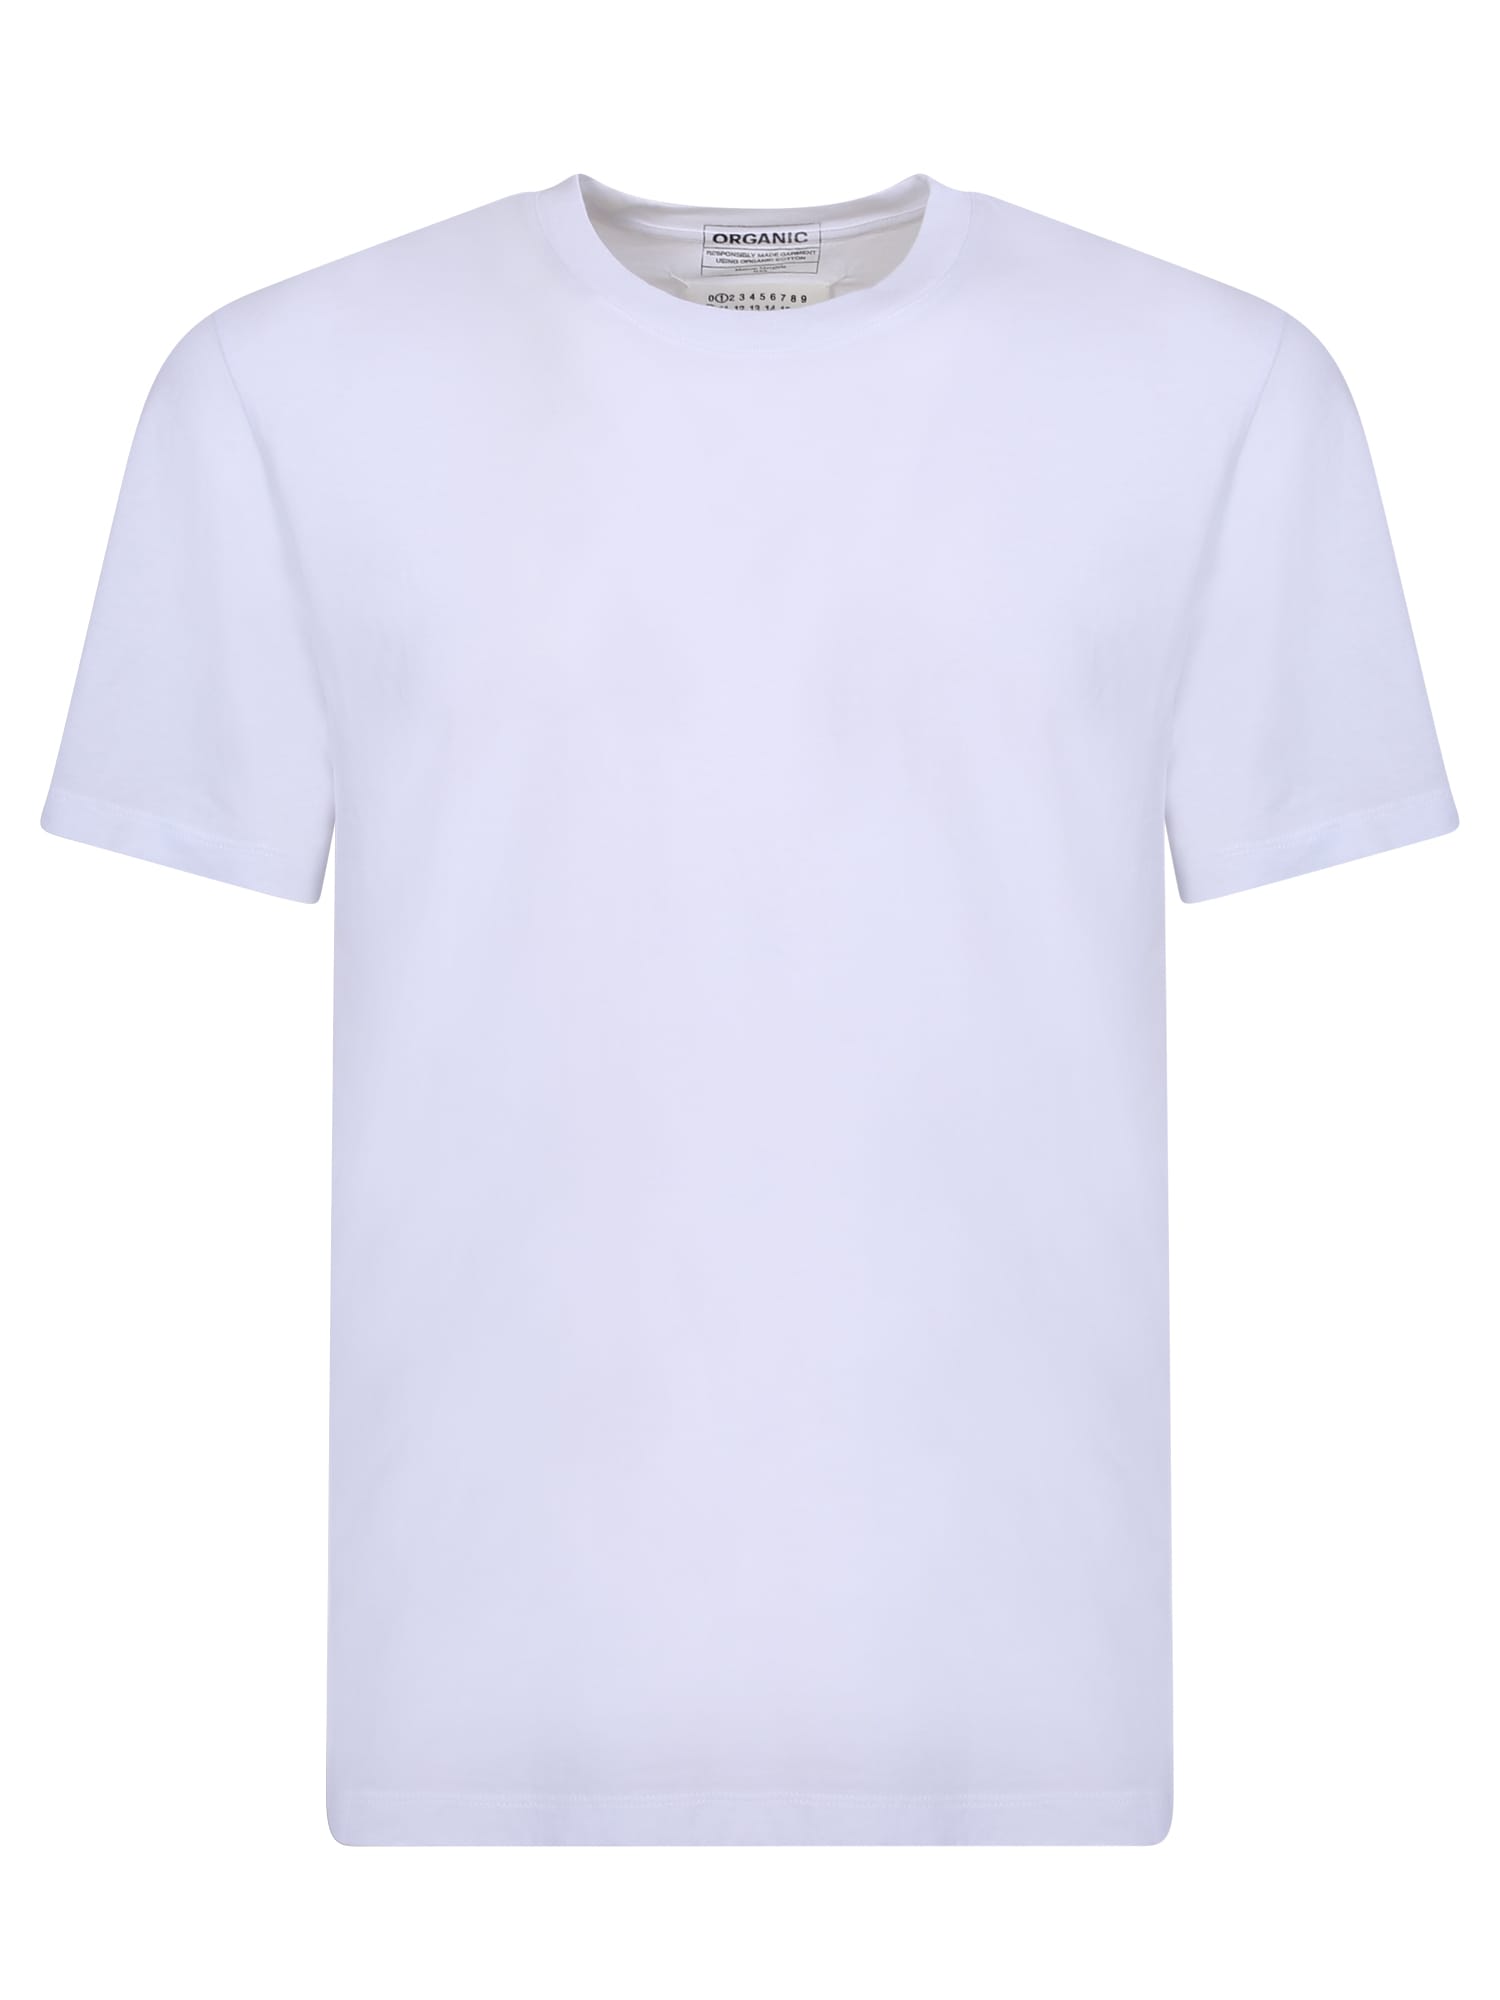 Maison Margiela Basic T-shirt White